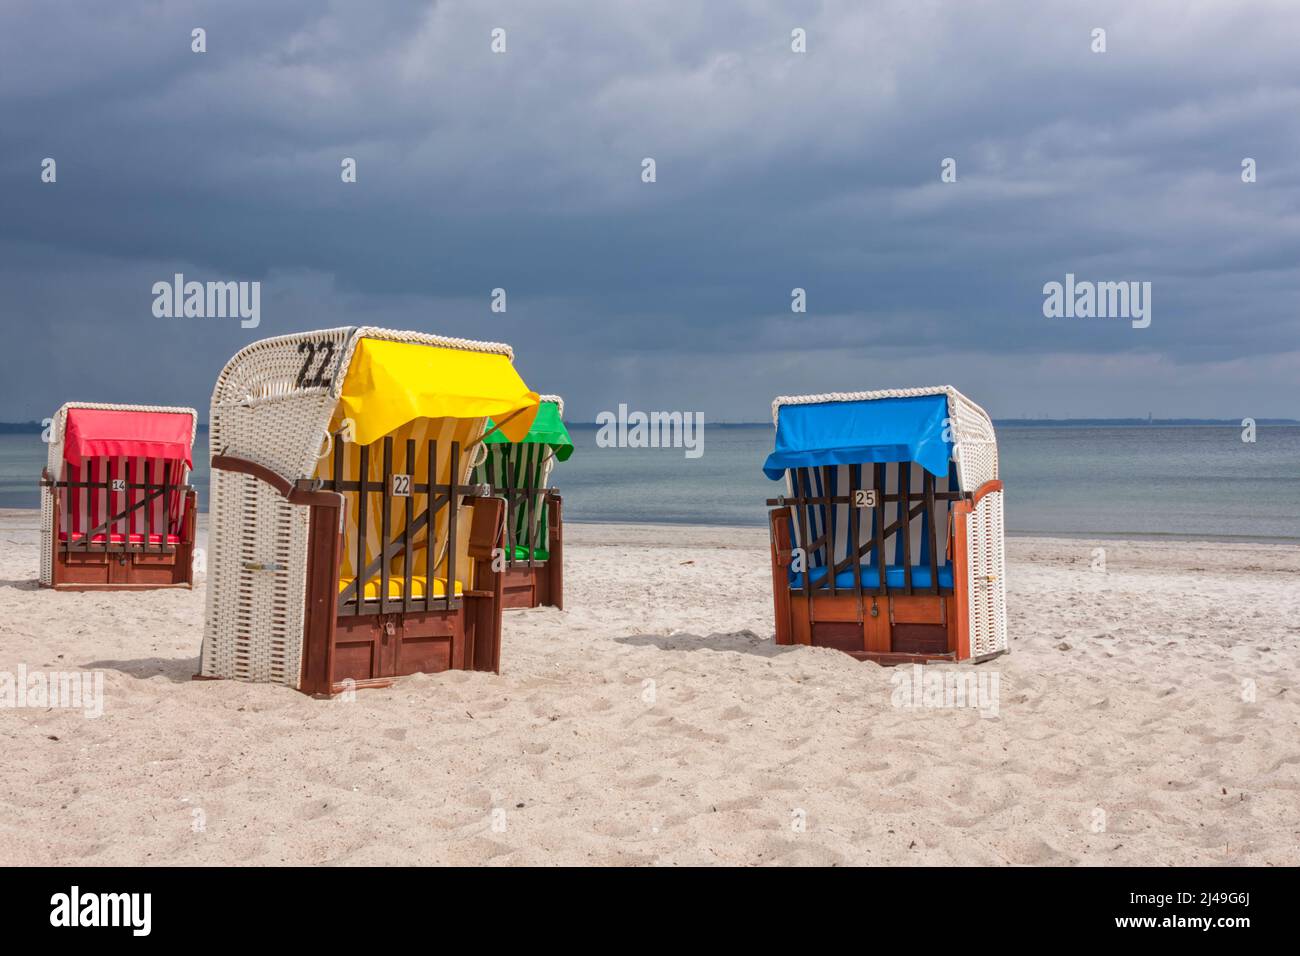 Quatre chaises de plage à capuchon aux couleurs vives sur la plage de la mer Baltique, soleil éclatant, nuages de pluie sombres Banque D'Images